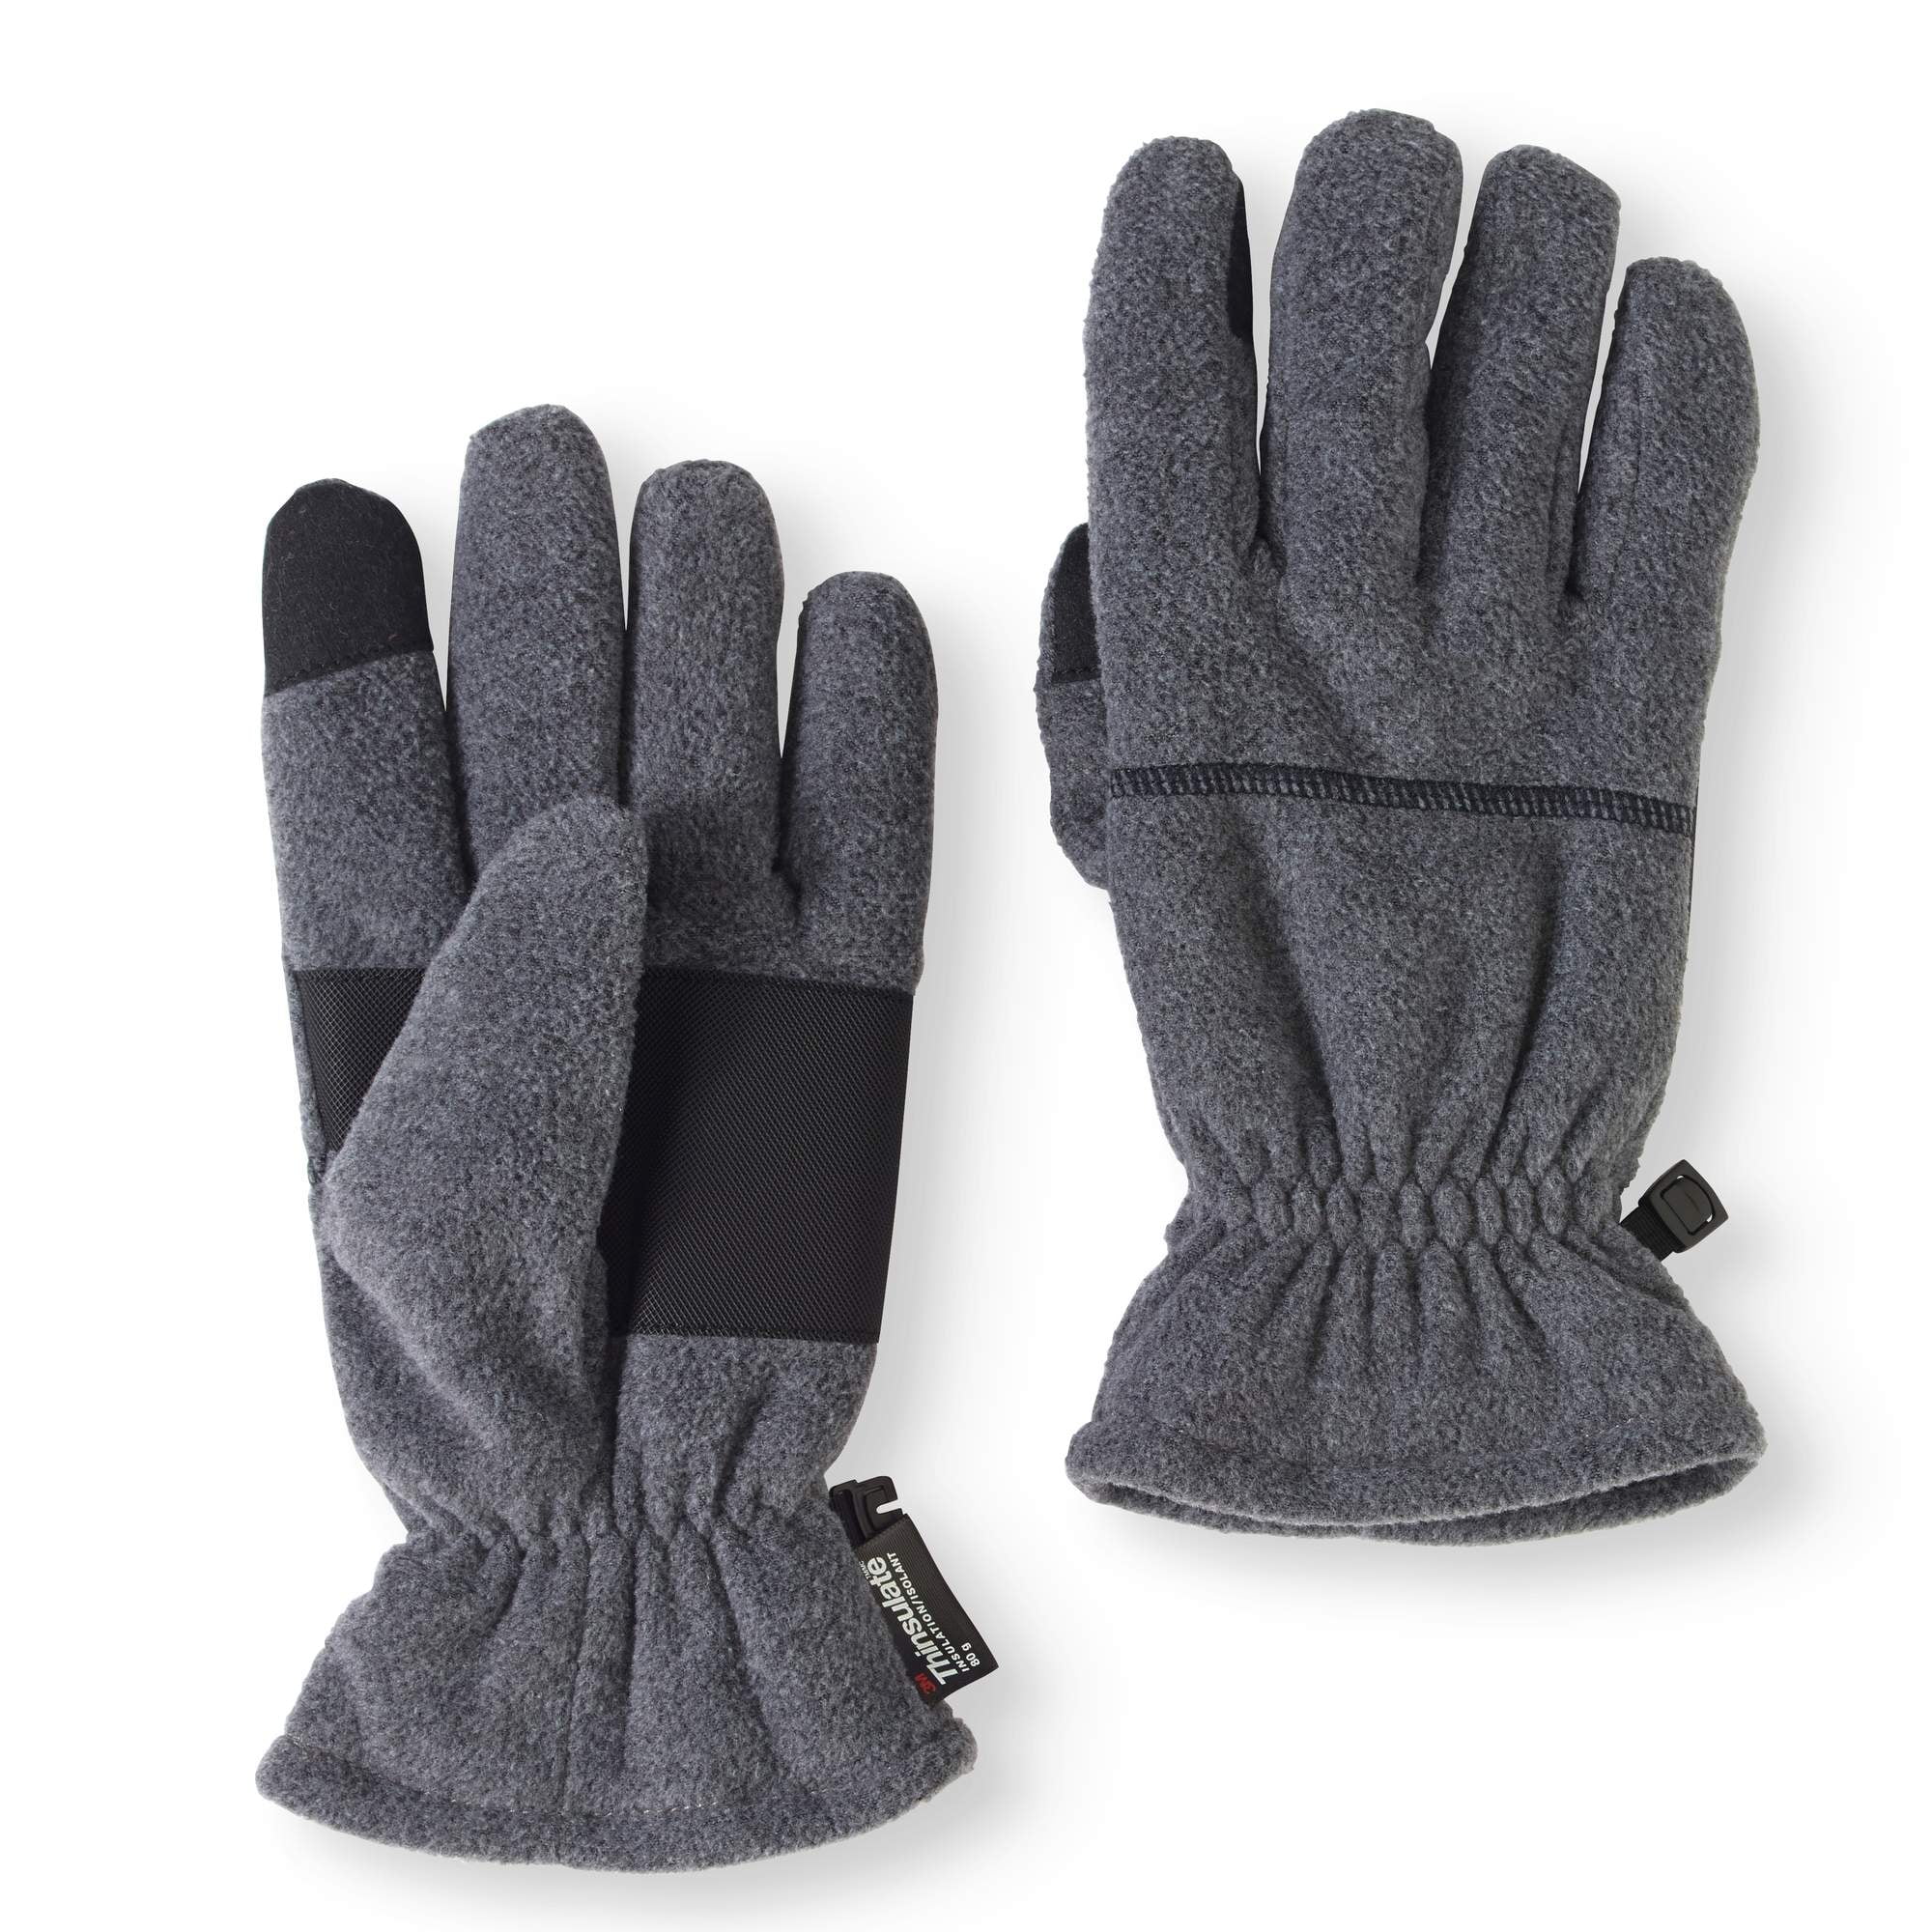 Men's Fleece Touchscreen Glove with Padded Palm - Walmart.com